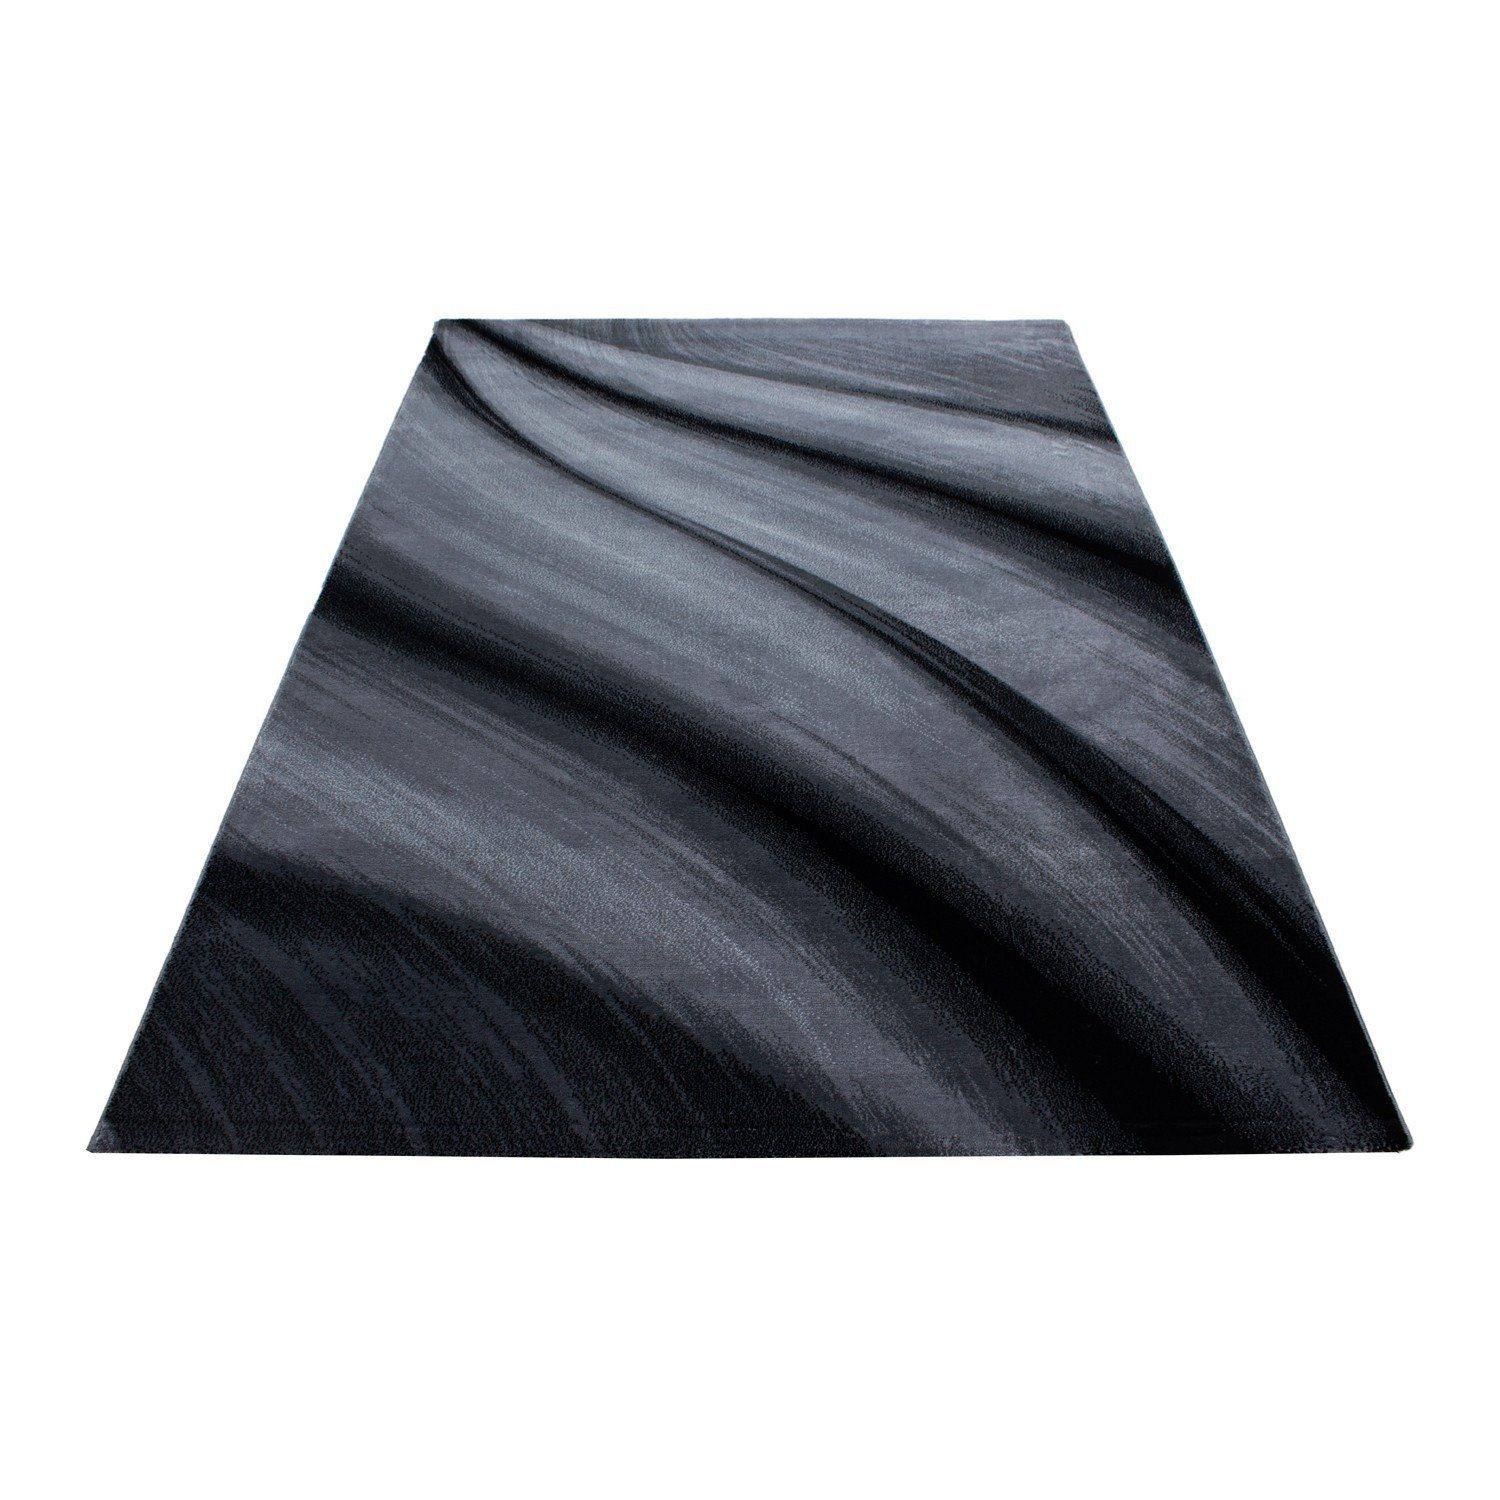 Flachflorteppich modern deko, Wellenoptik Schwarz Designteppich Miovani Kurzflorteppich